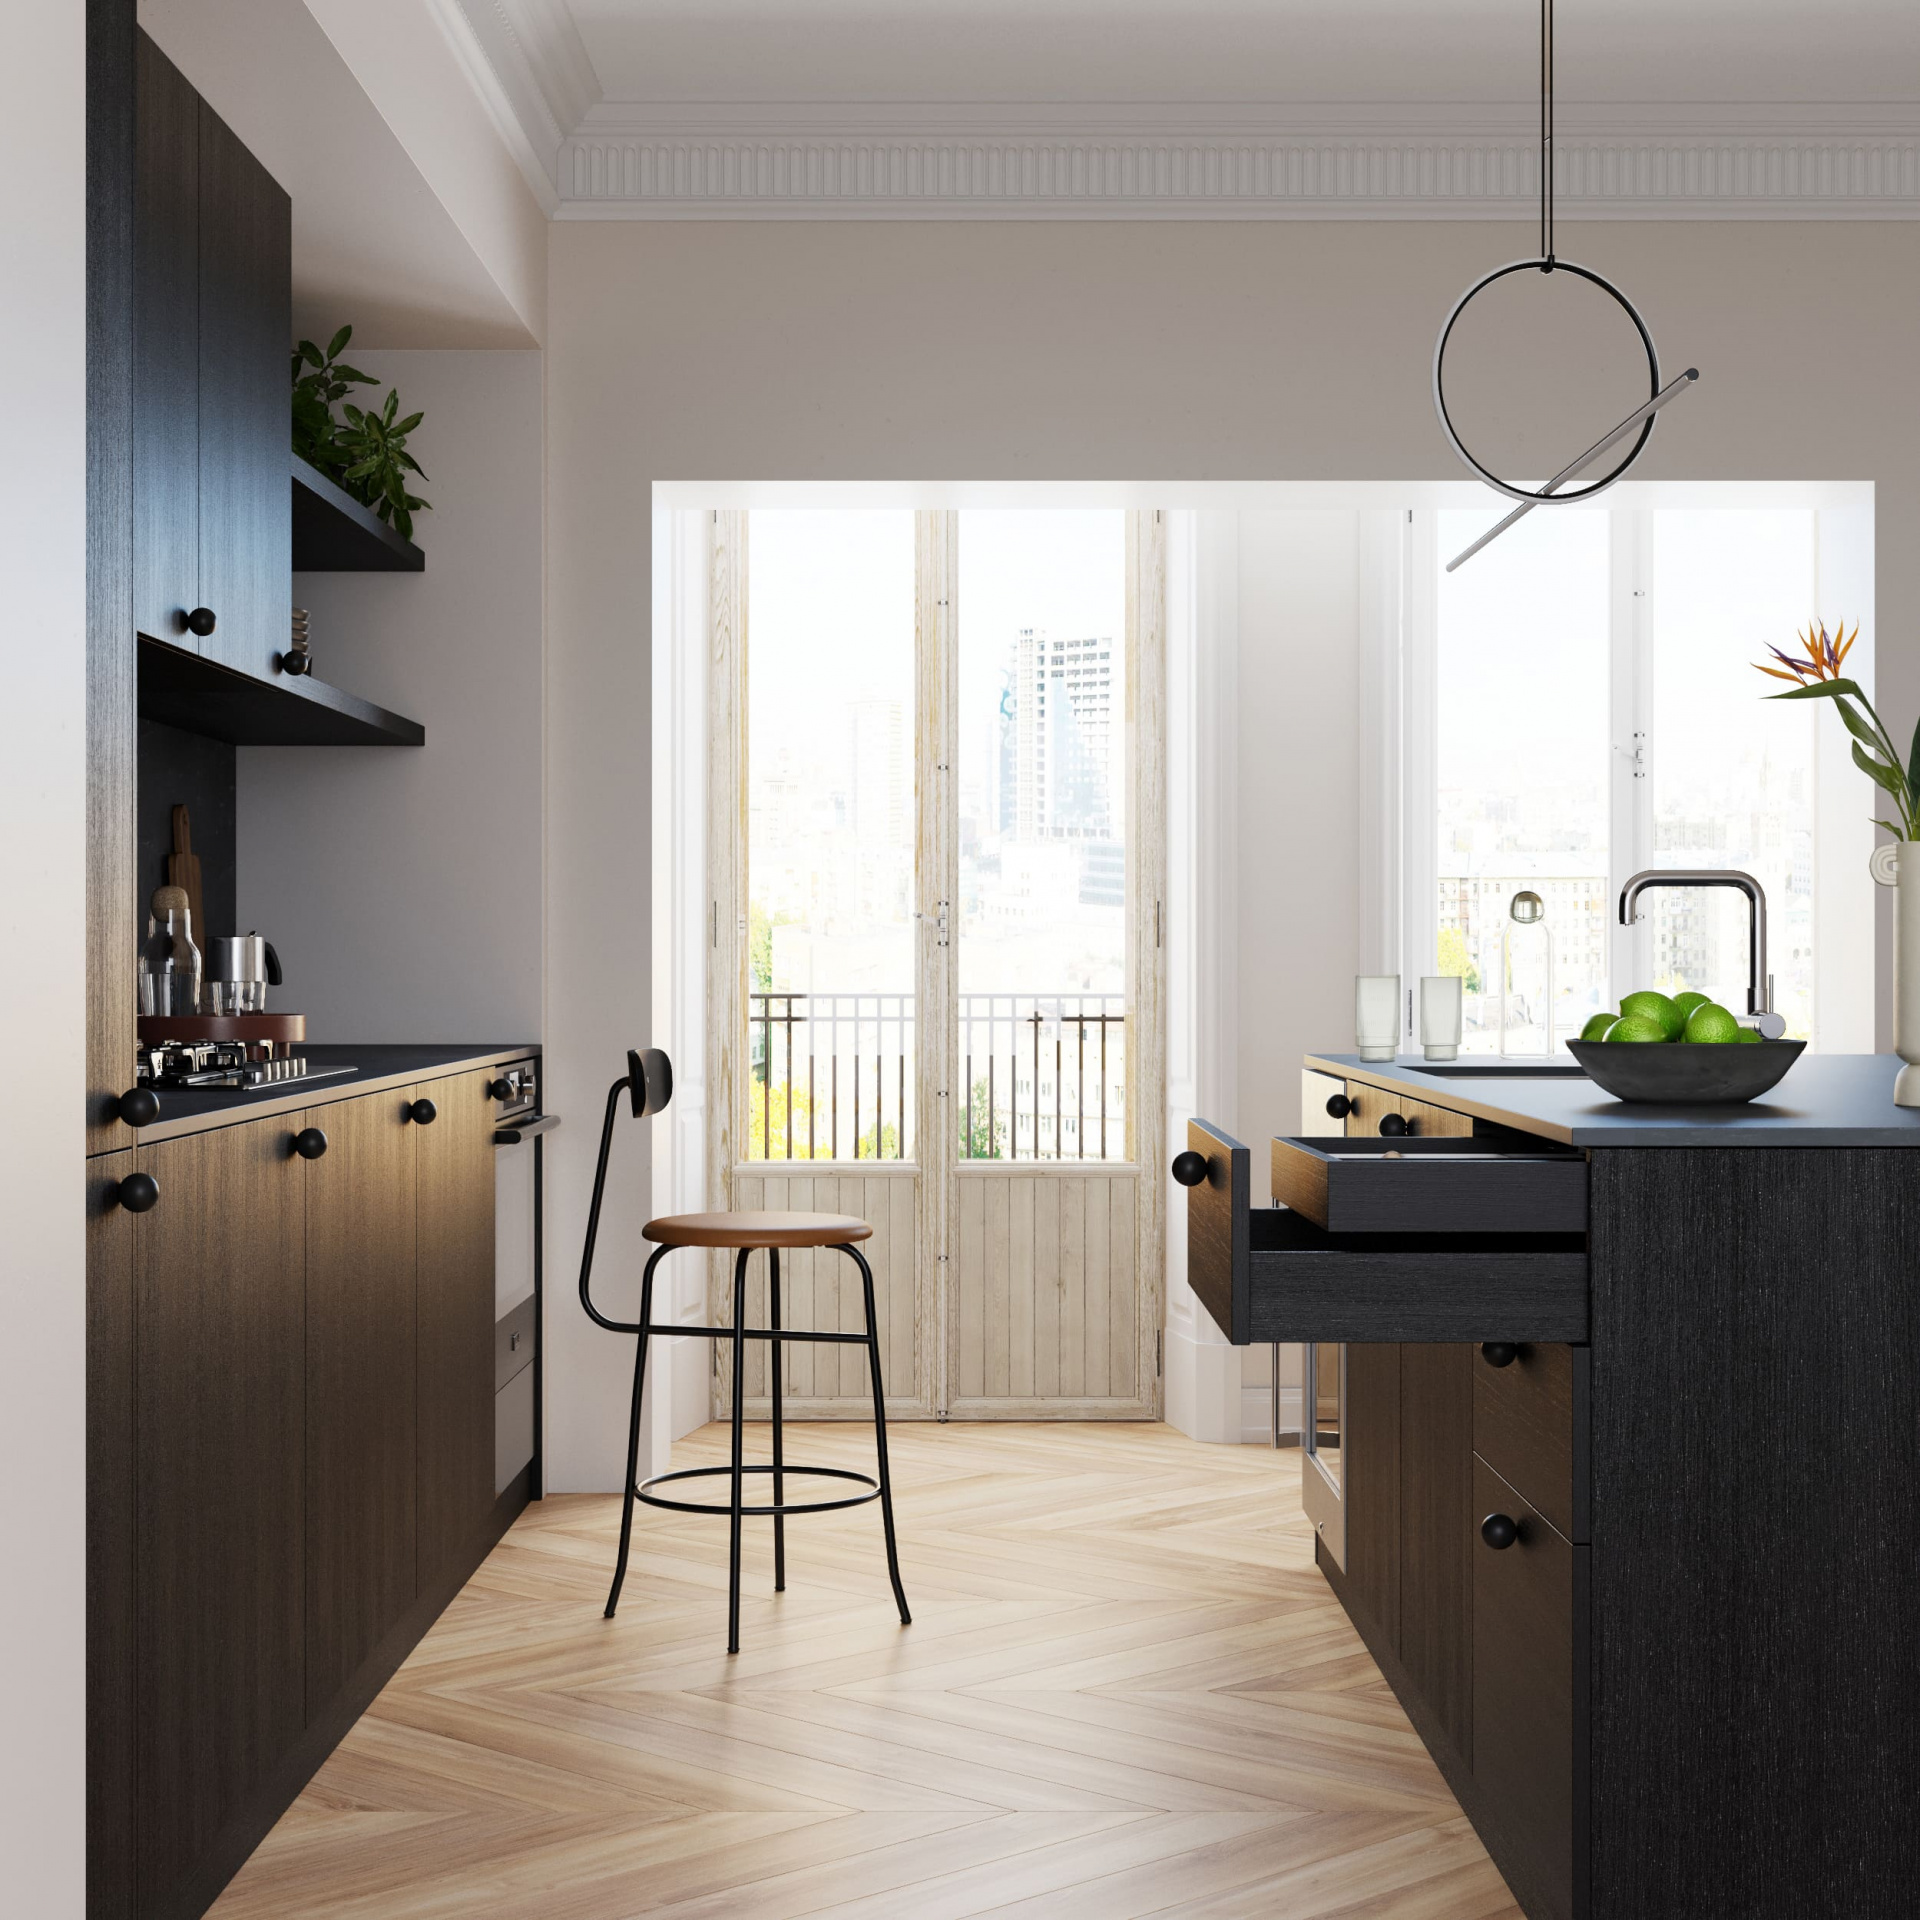 Мебель для кухни Black с островом и ручками-шариками Balls – эстонский бренд FRONTME.